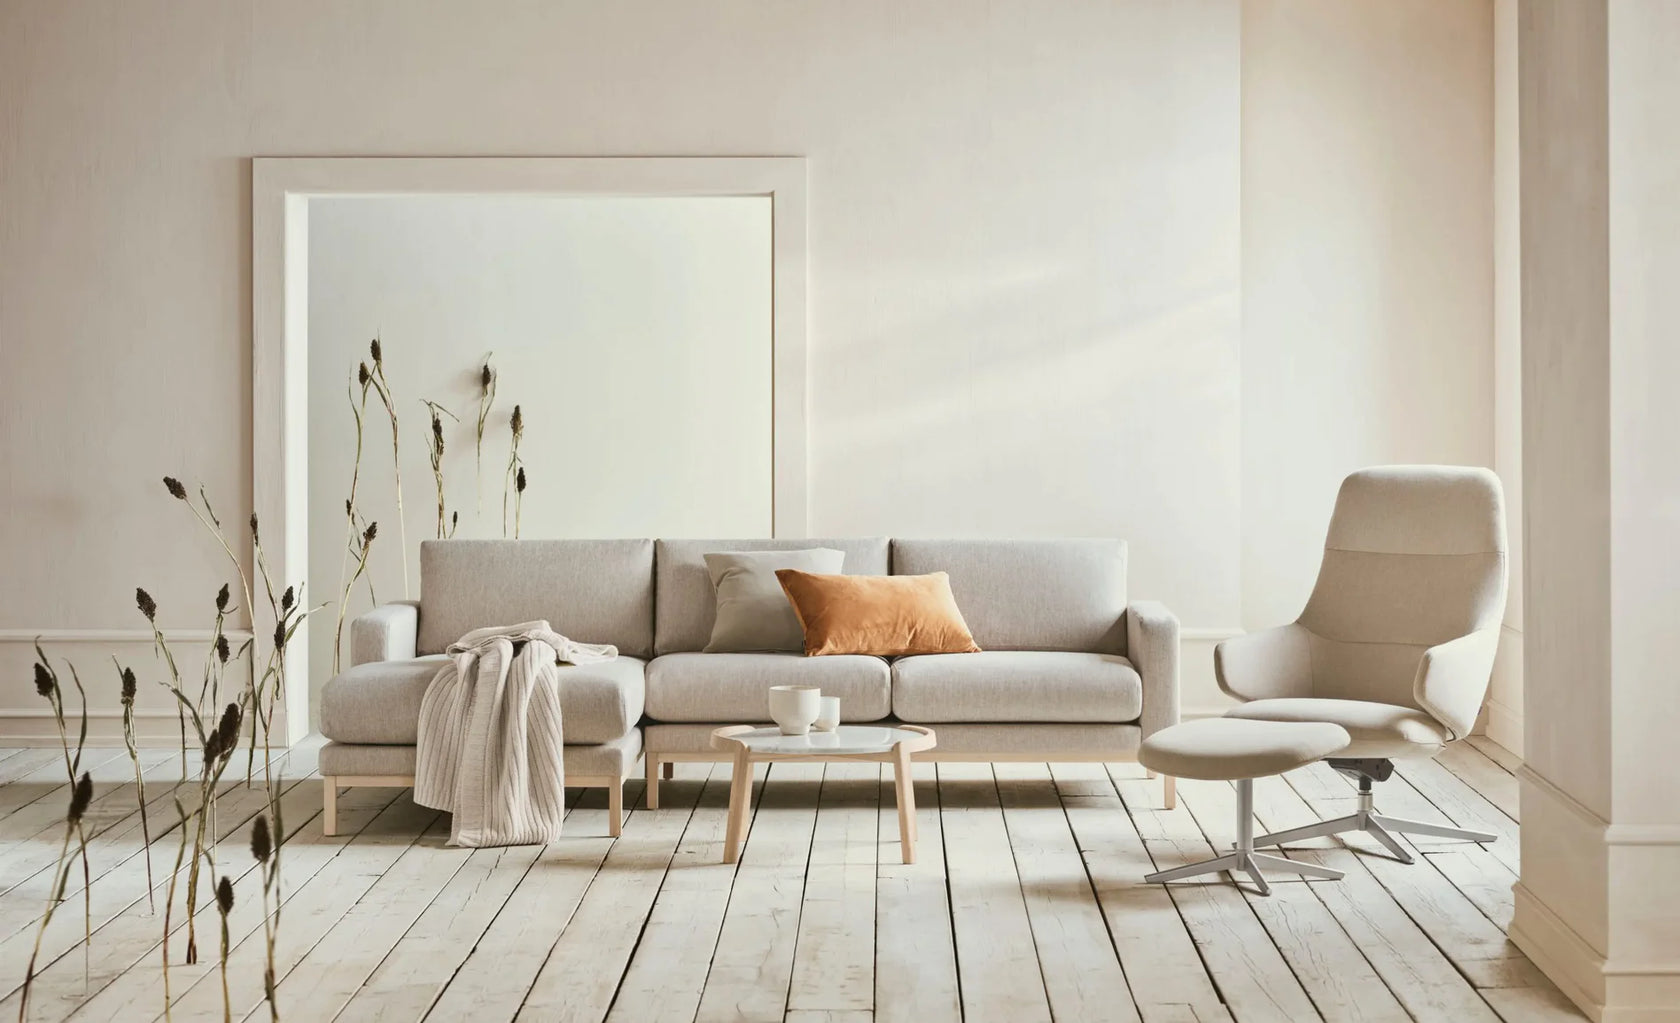 Location de meubles design à lausanne- Swaap.ch